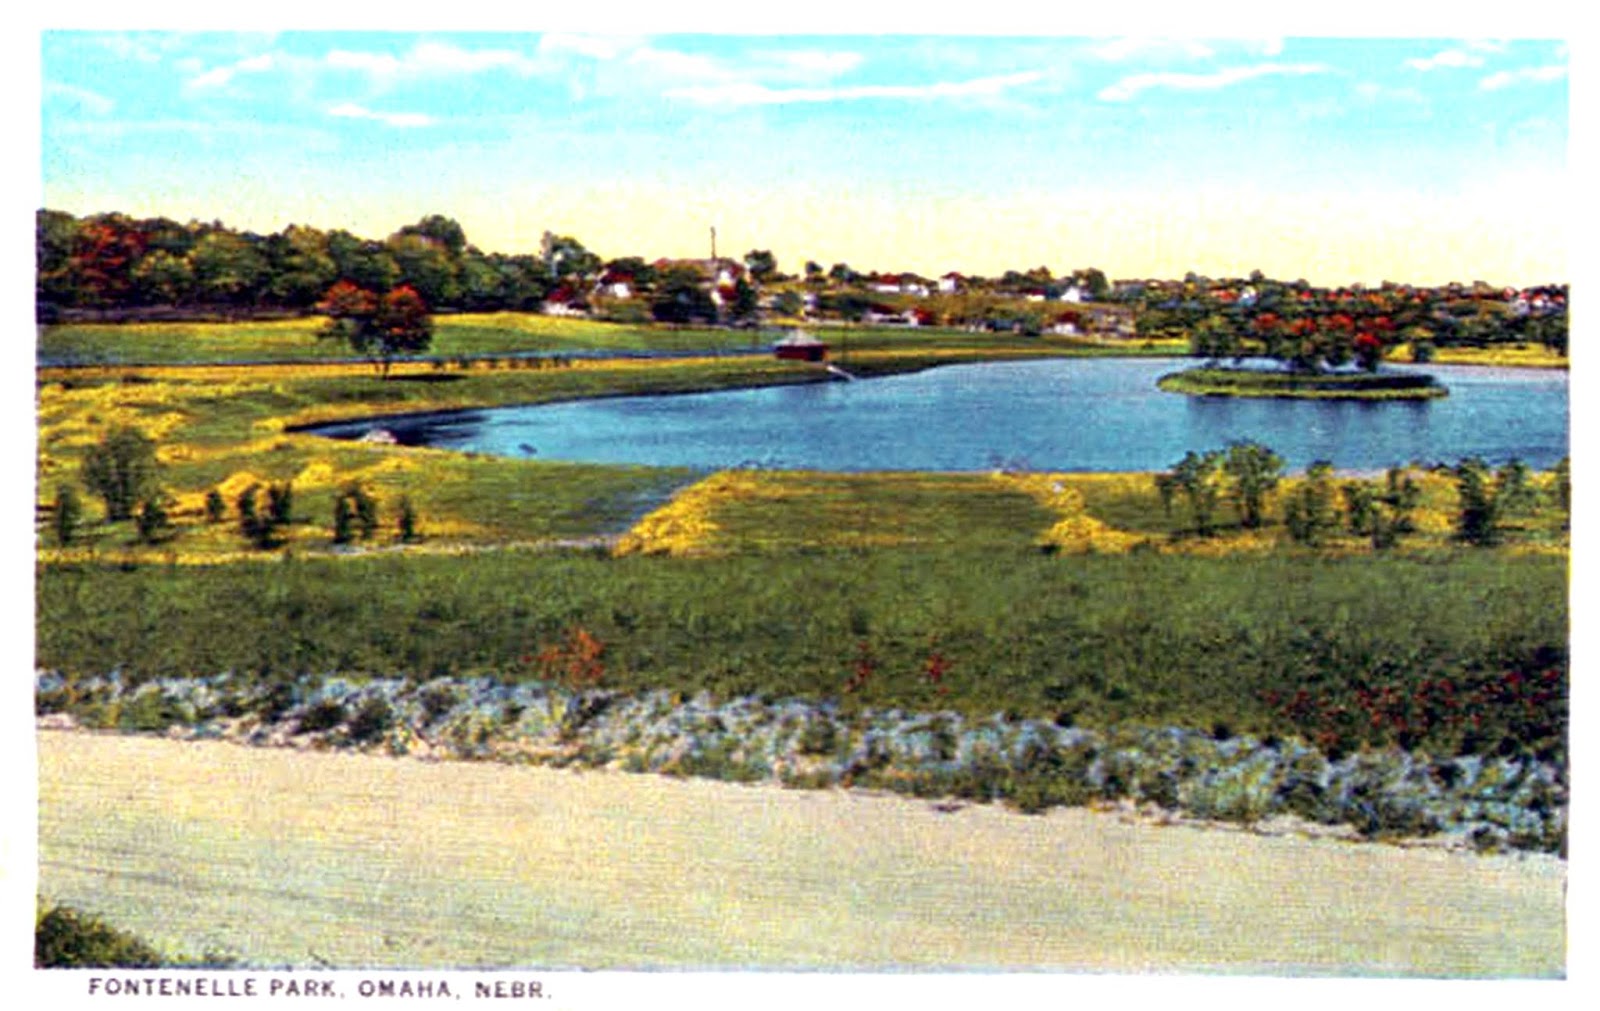 Fontenelle Park Lagoon, North Omaha, Nebraska